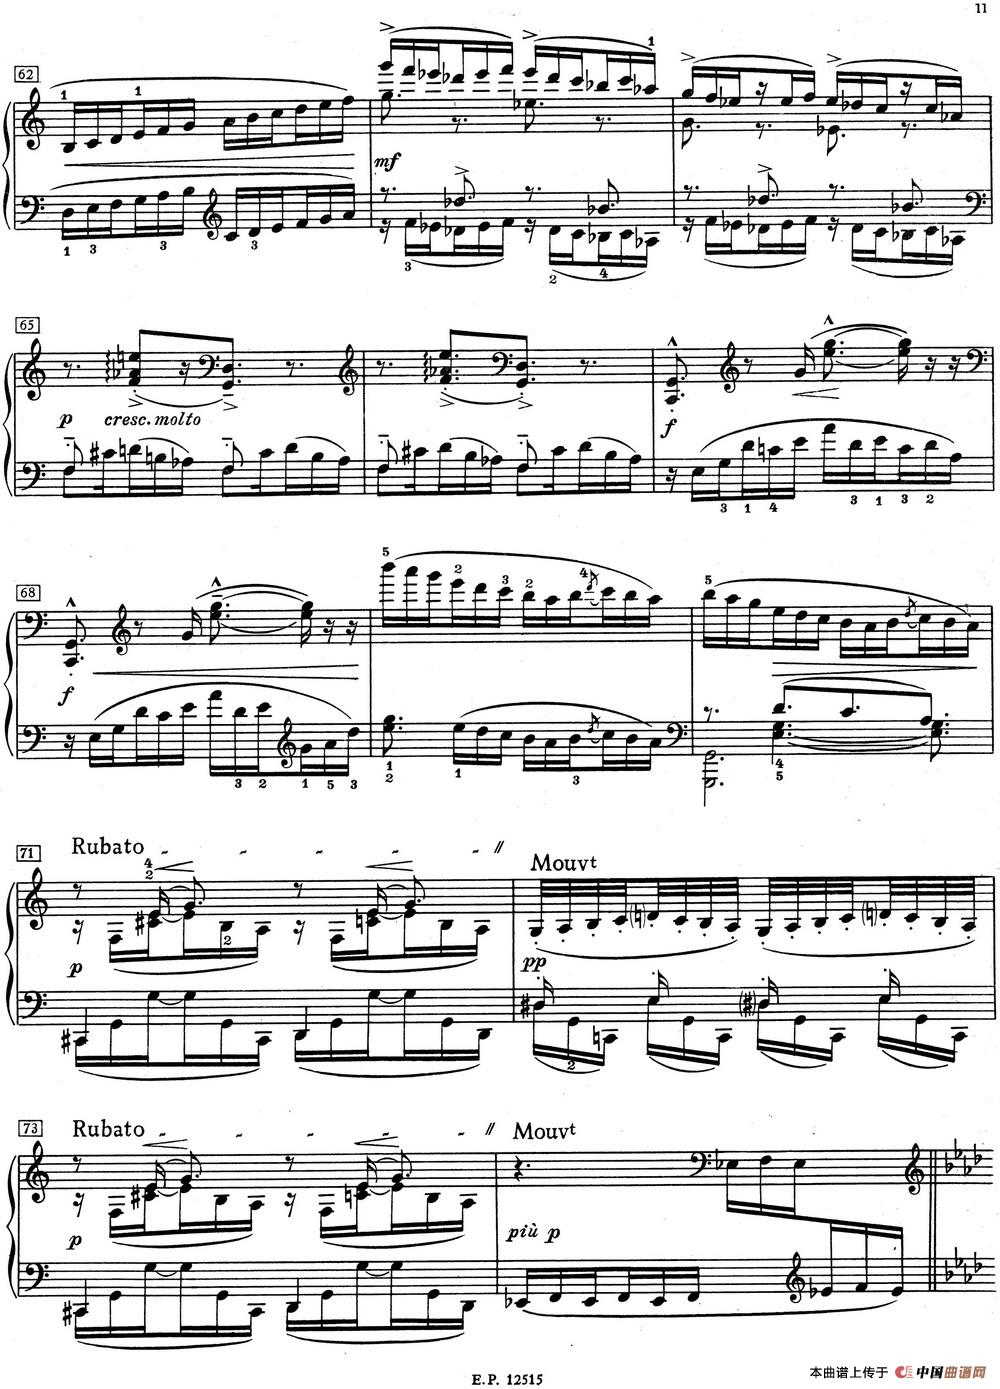 德彪西12首钢琴练习曲（1 五指练习v1.0 cinq doigts）(1)_1 Pour les cinq doigts_页面_5.jpg